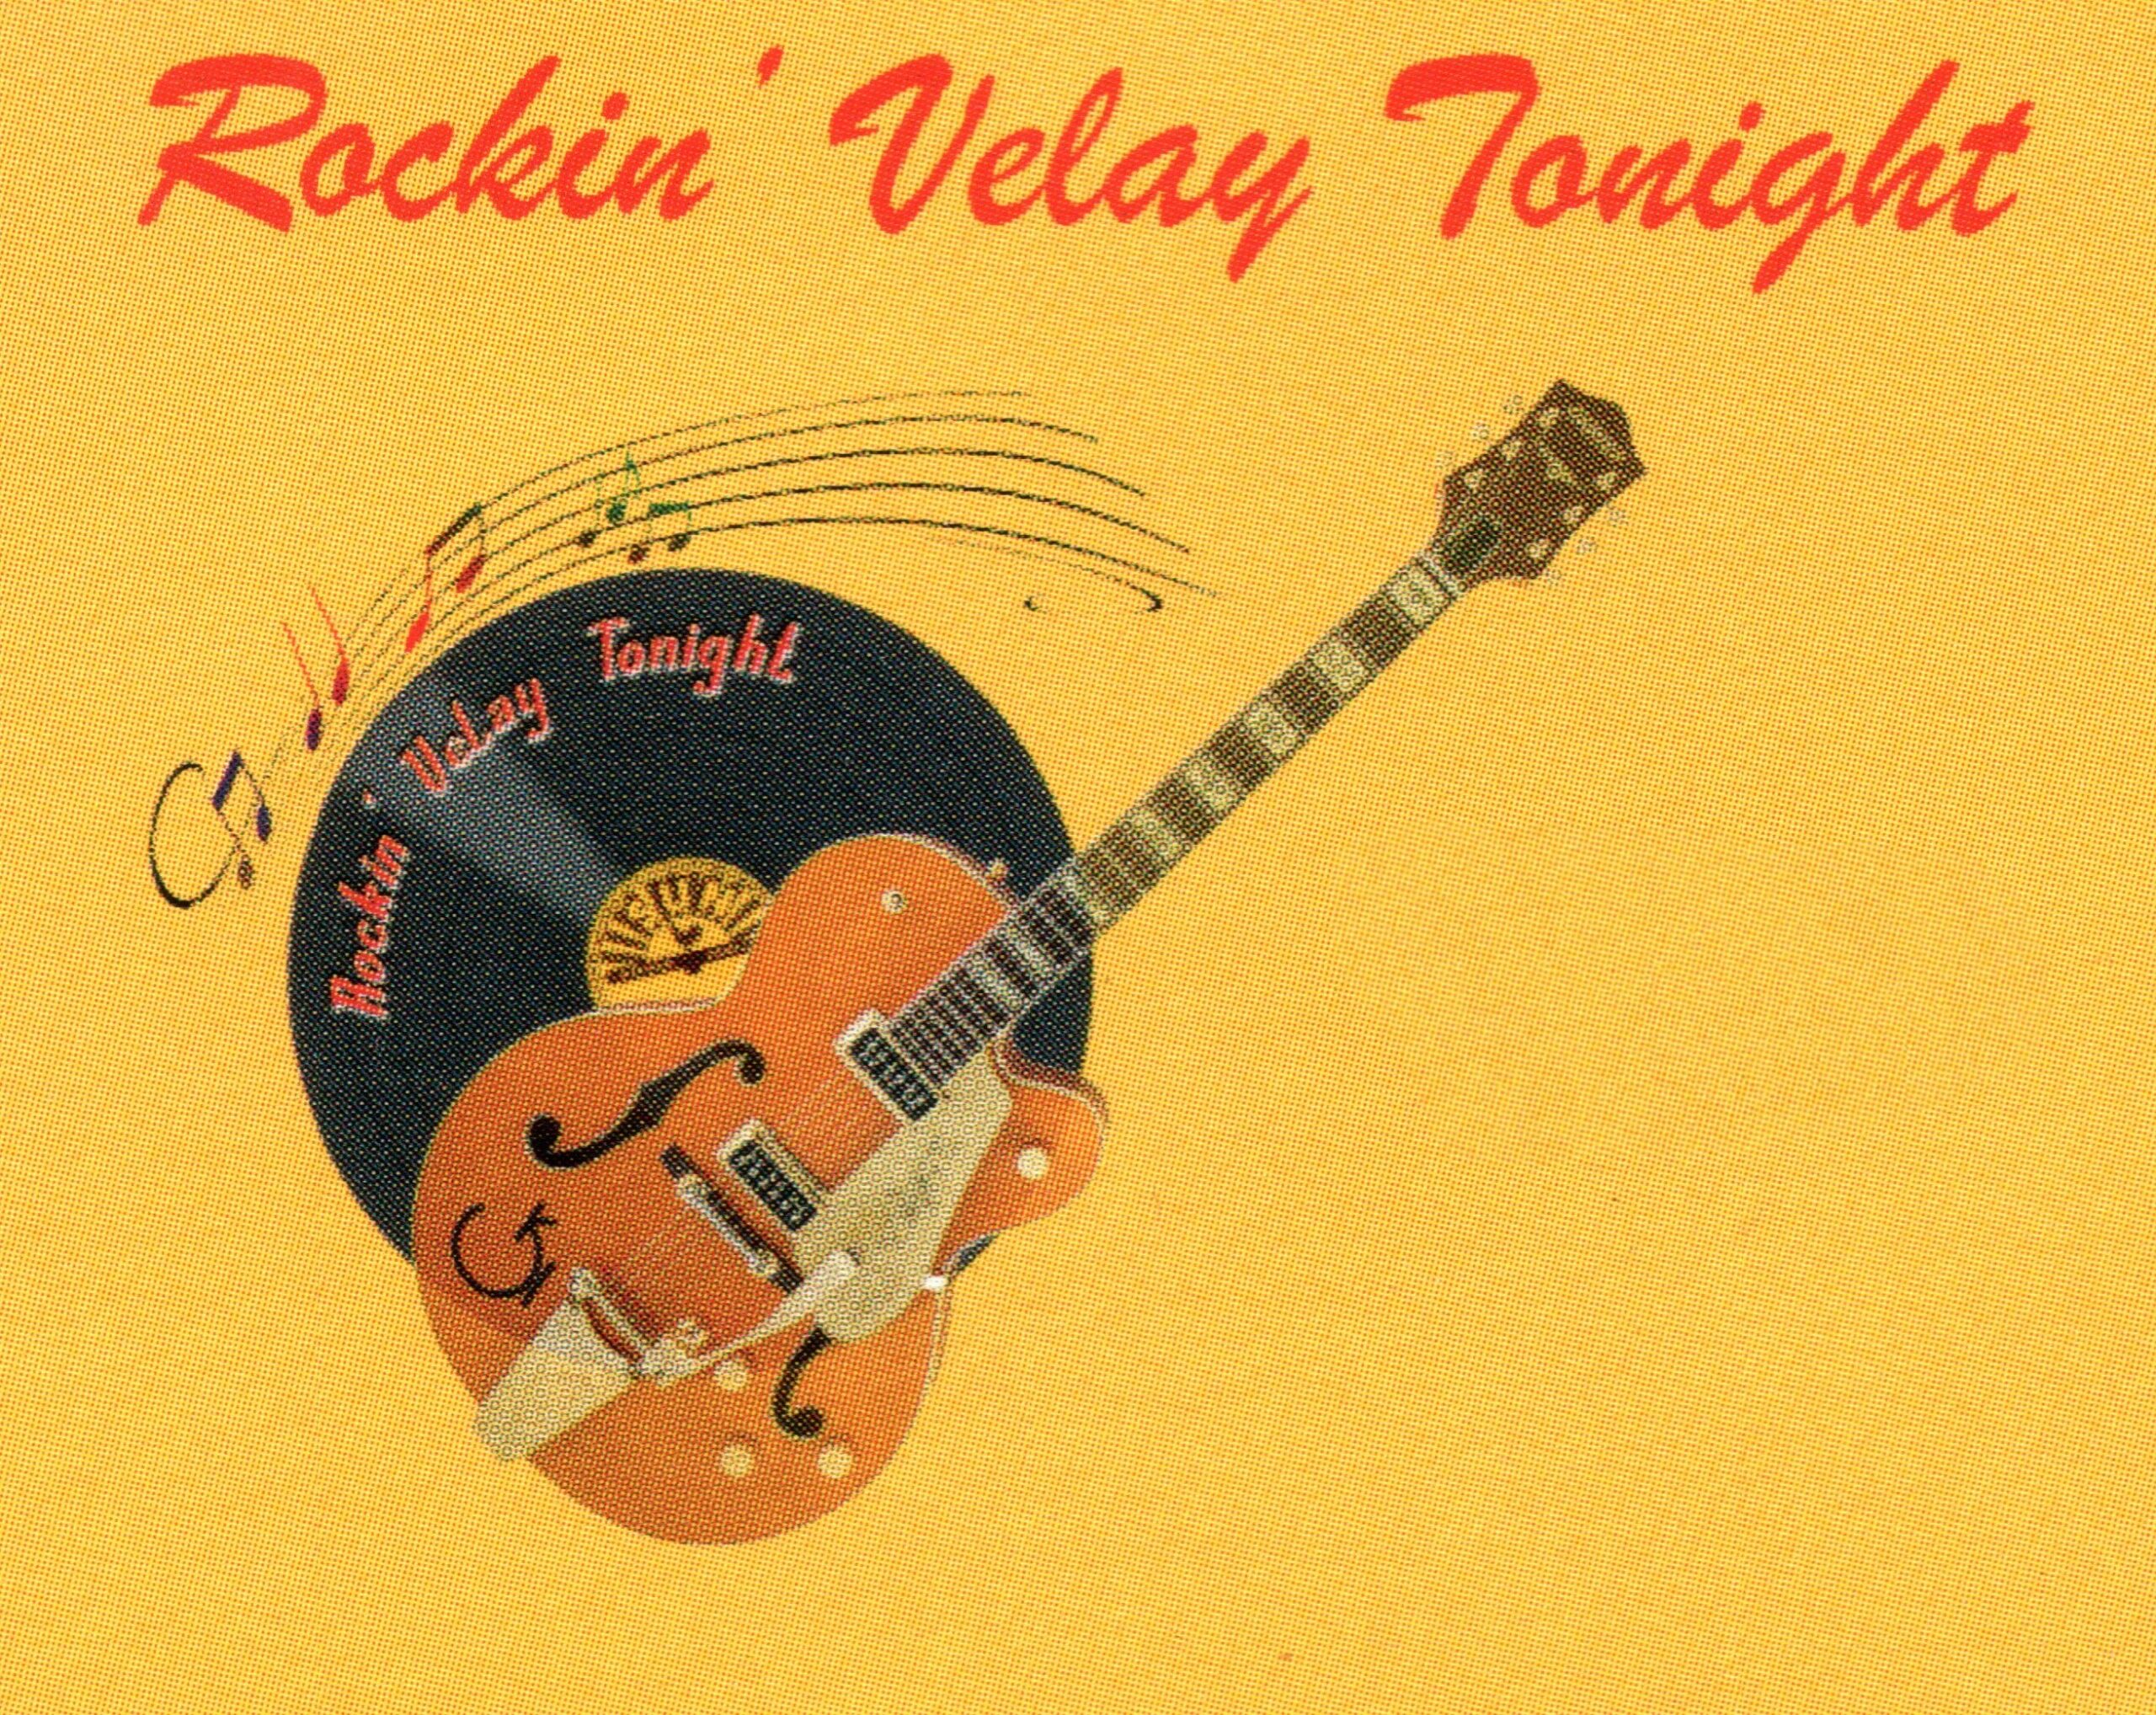 Rockin’Velay Tonight